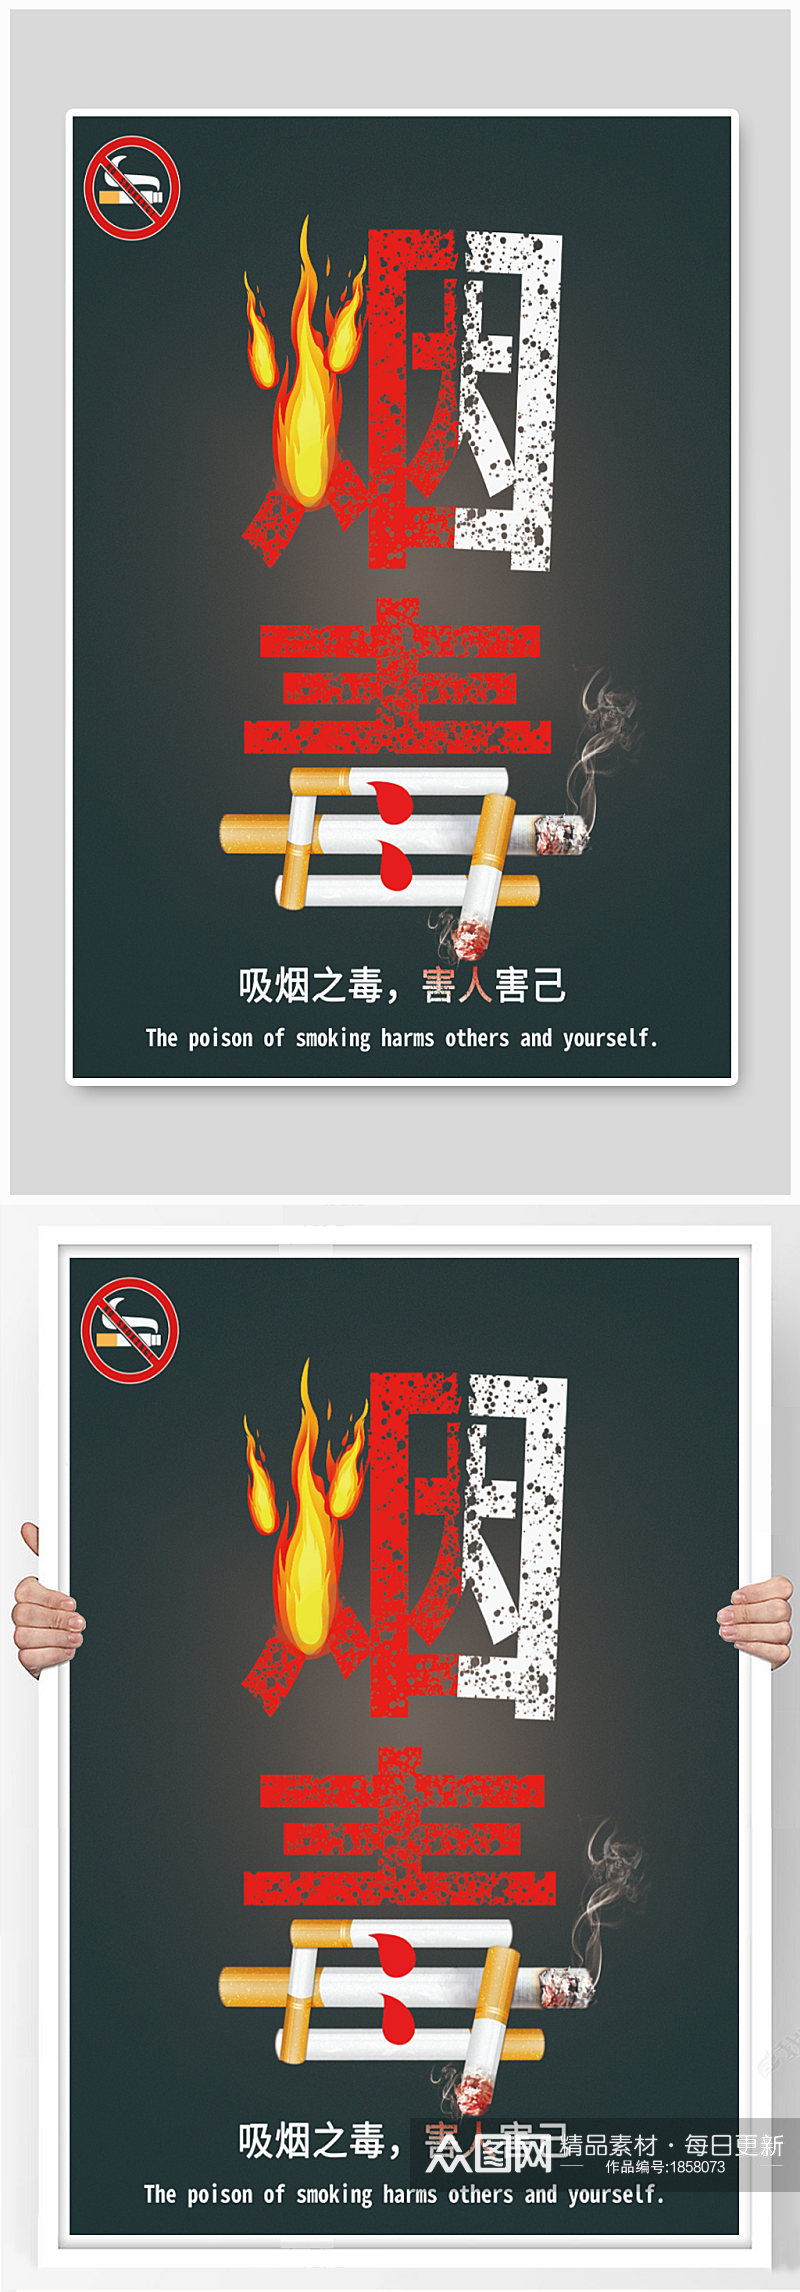 禁烟海报公益宣传戒烟宣传素材